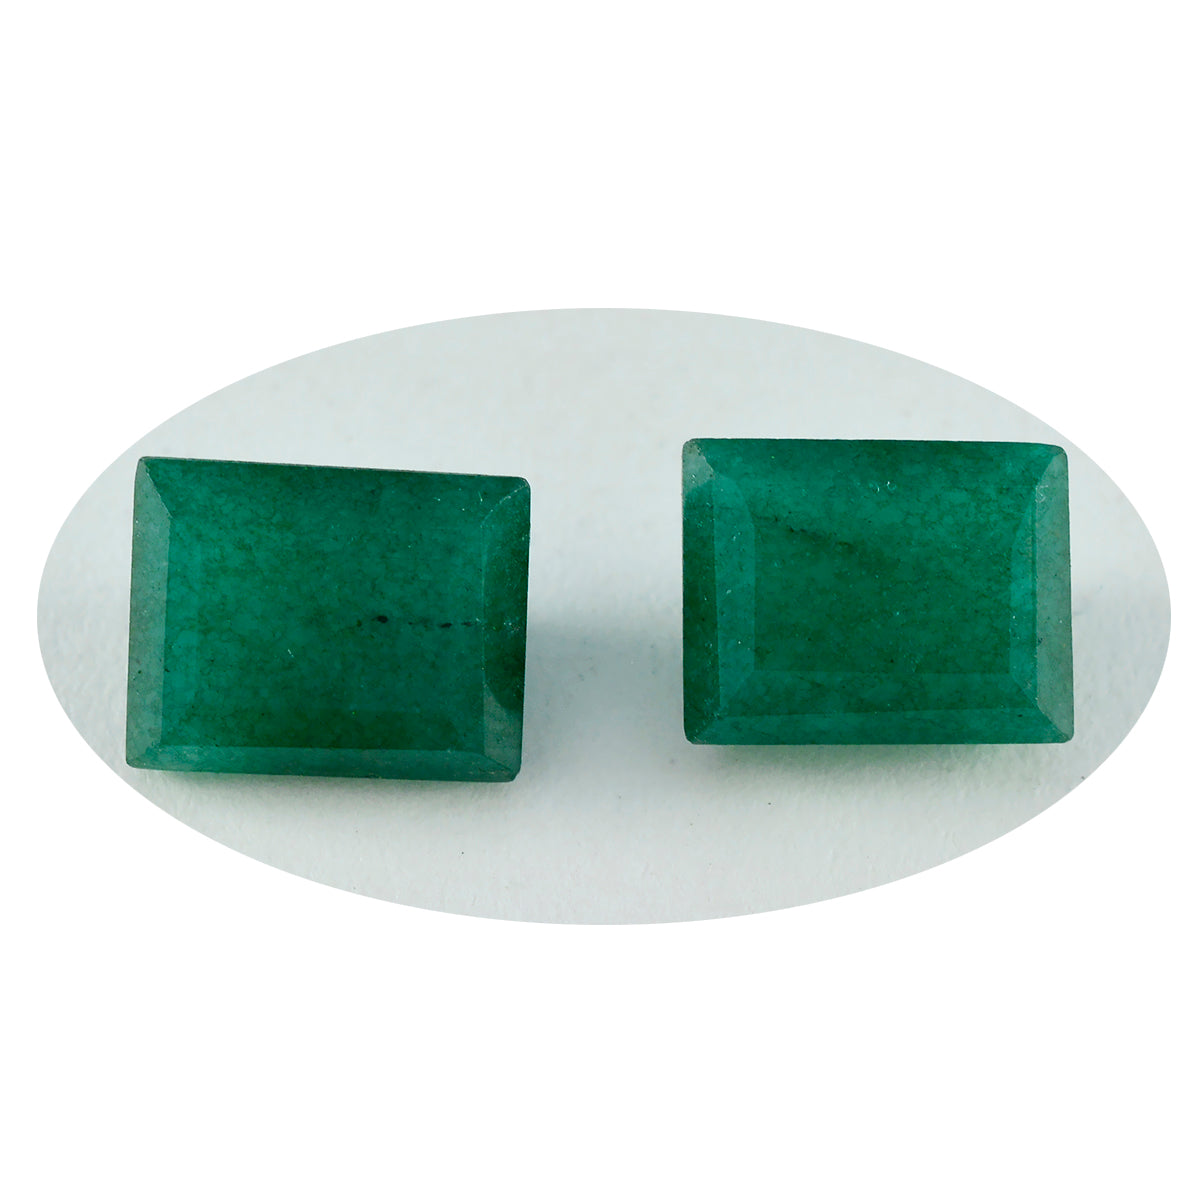 Riyogems 1pc jaspe vert naturel à facettes 12x16mm forme octogonale gemme de superbe qualité